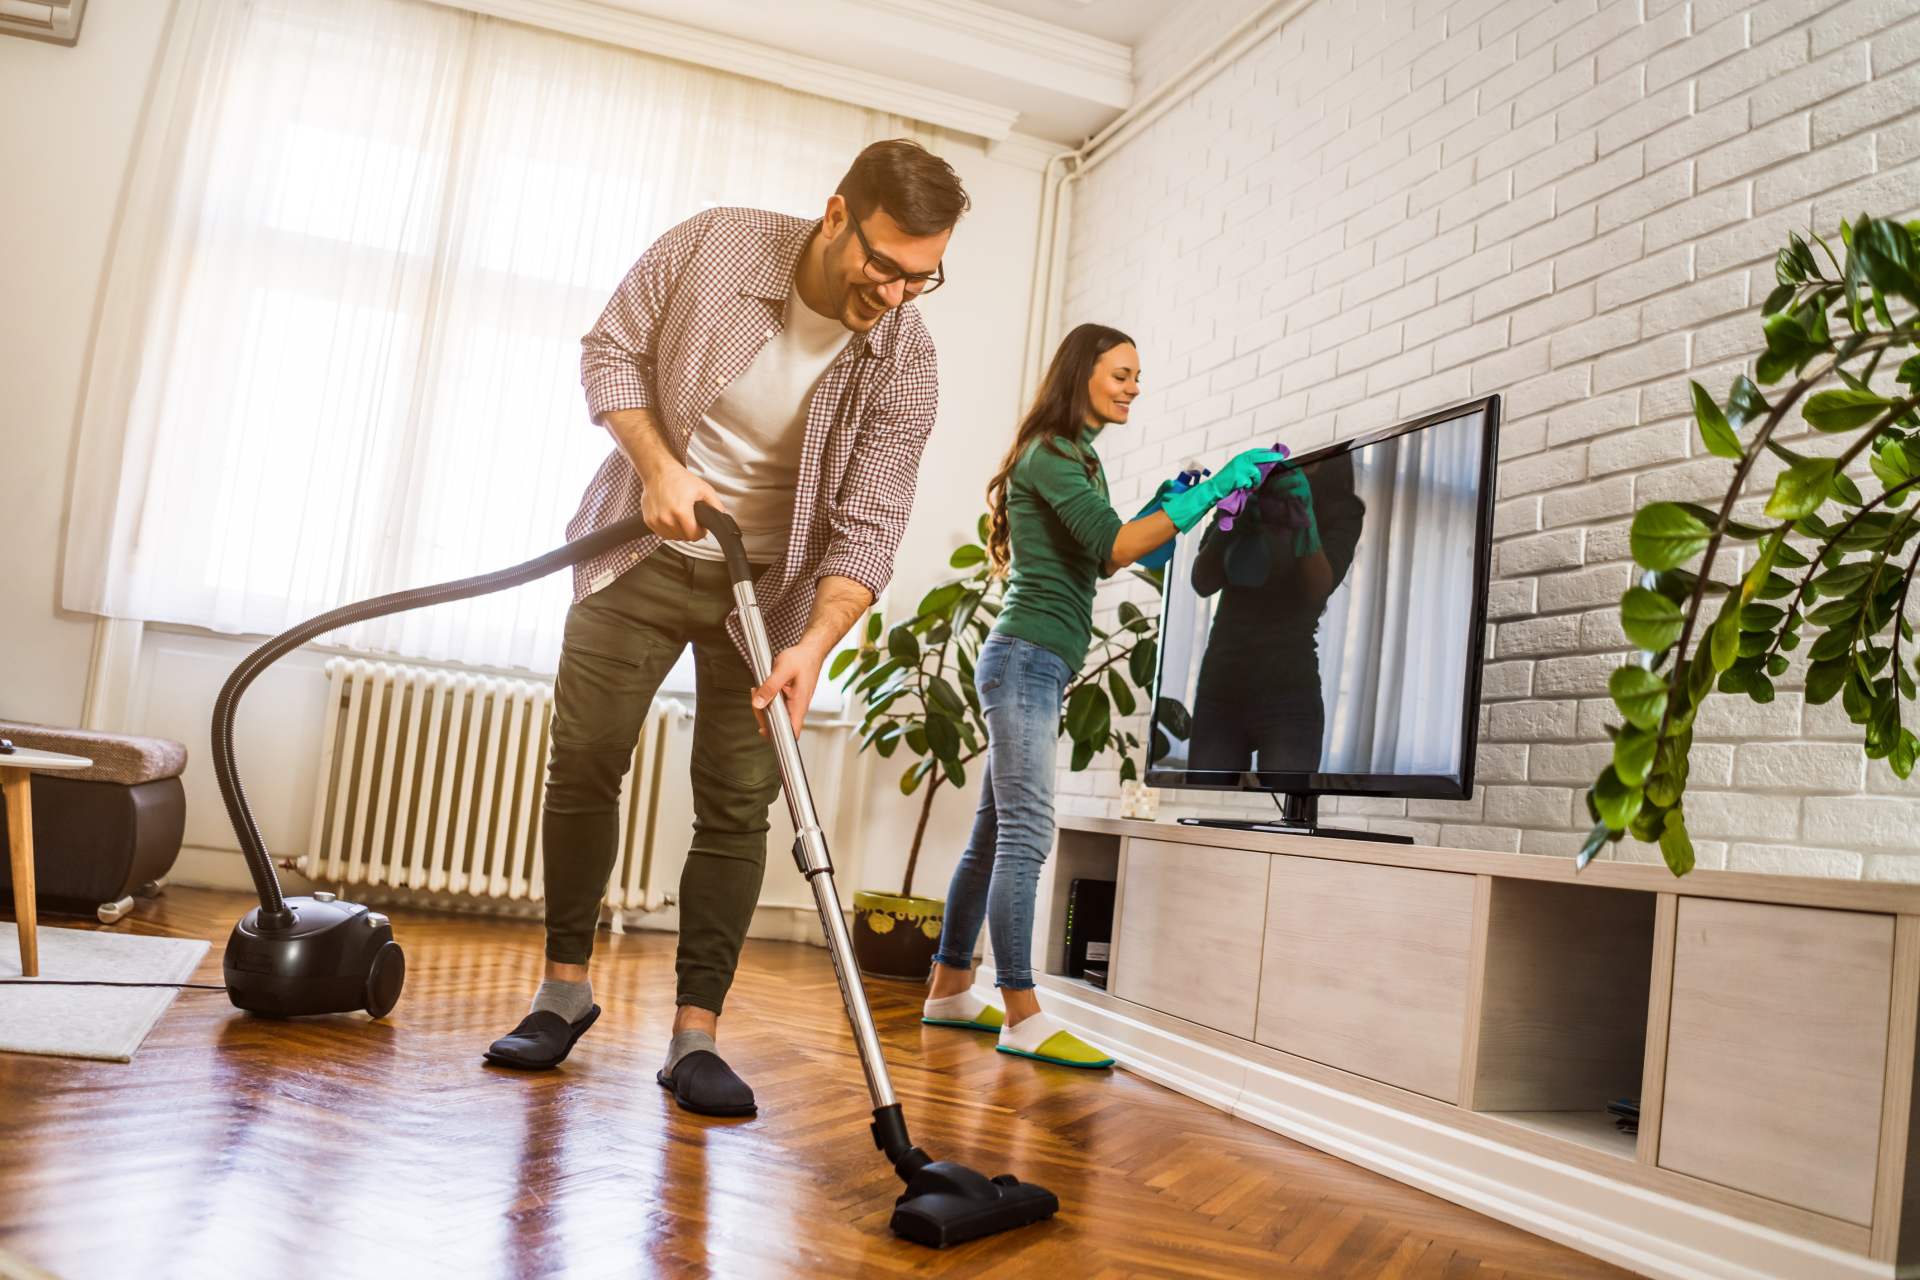 Limpieza en el hogar: el orden para limpiar en casa sí que importa si no  quieres